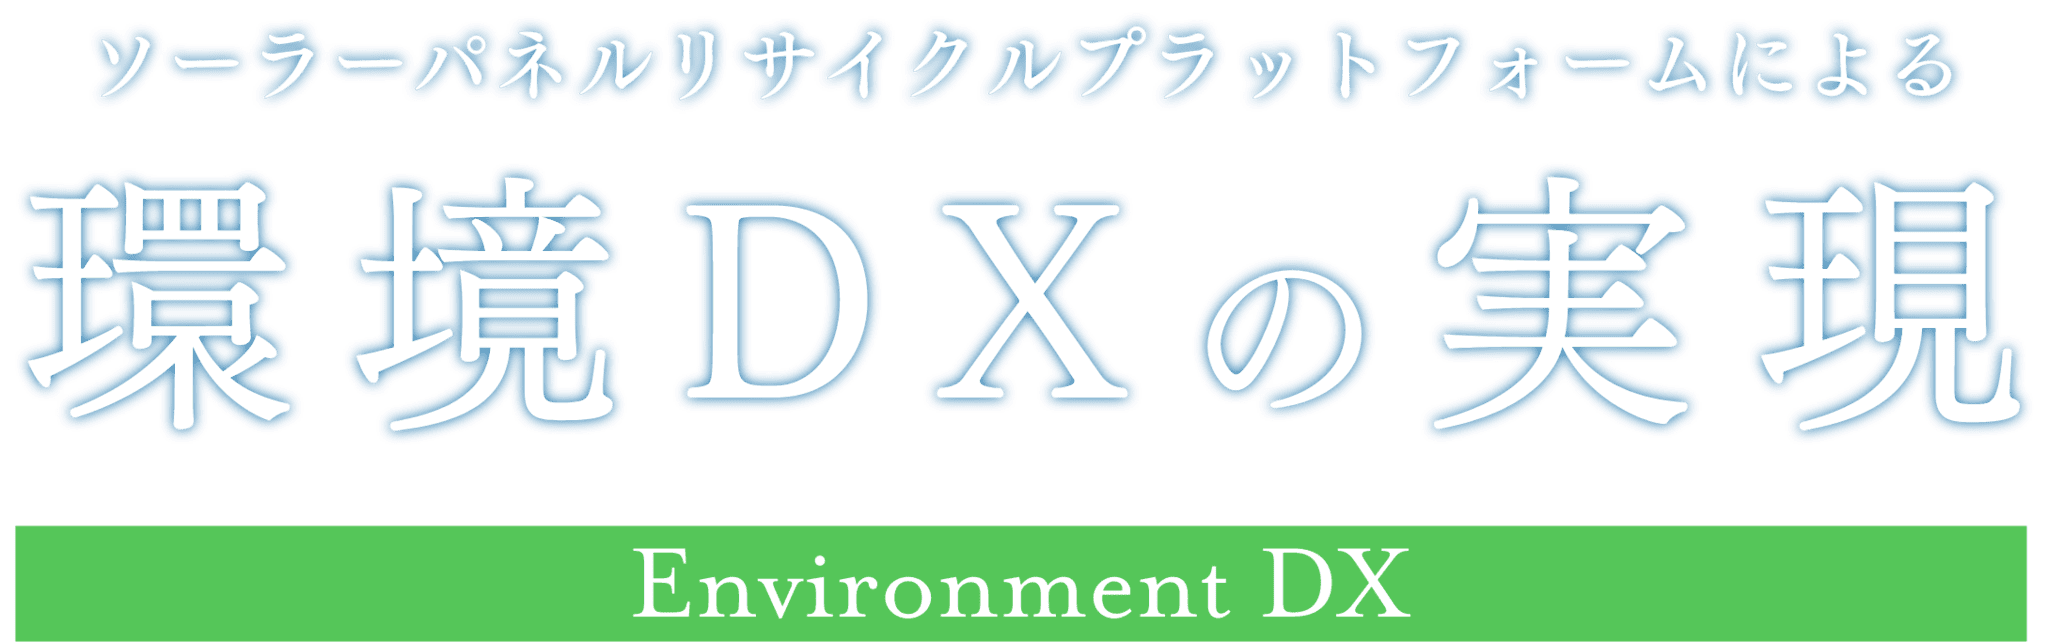 環境DXの実現